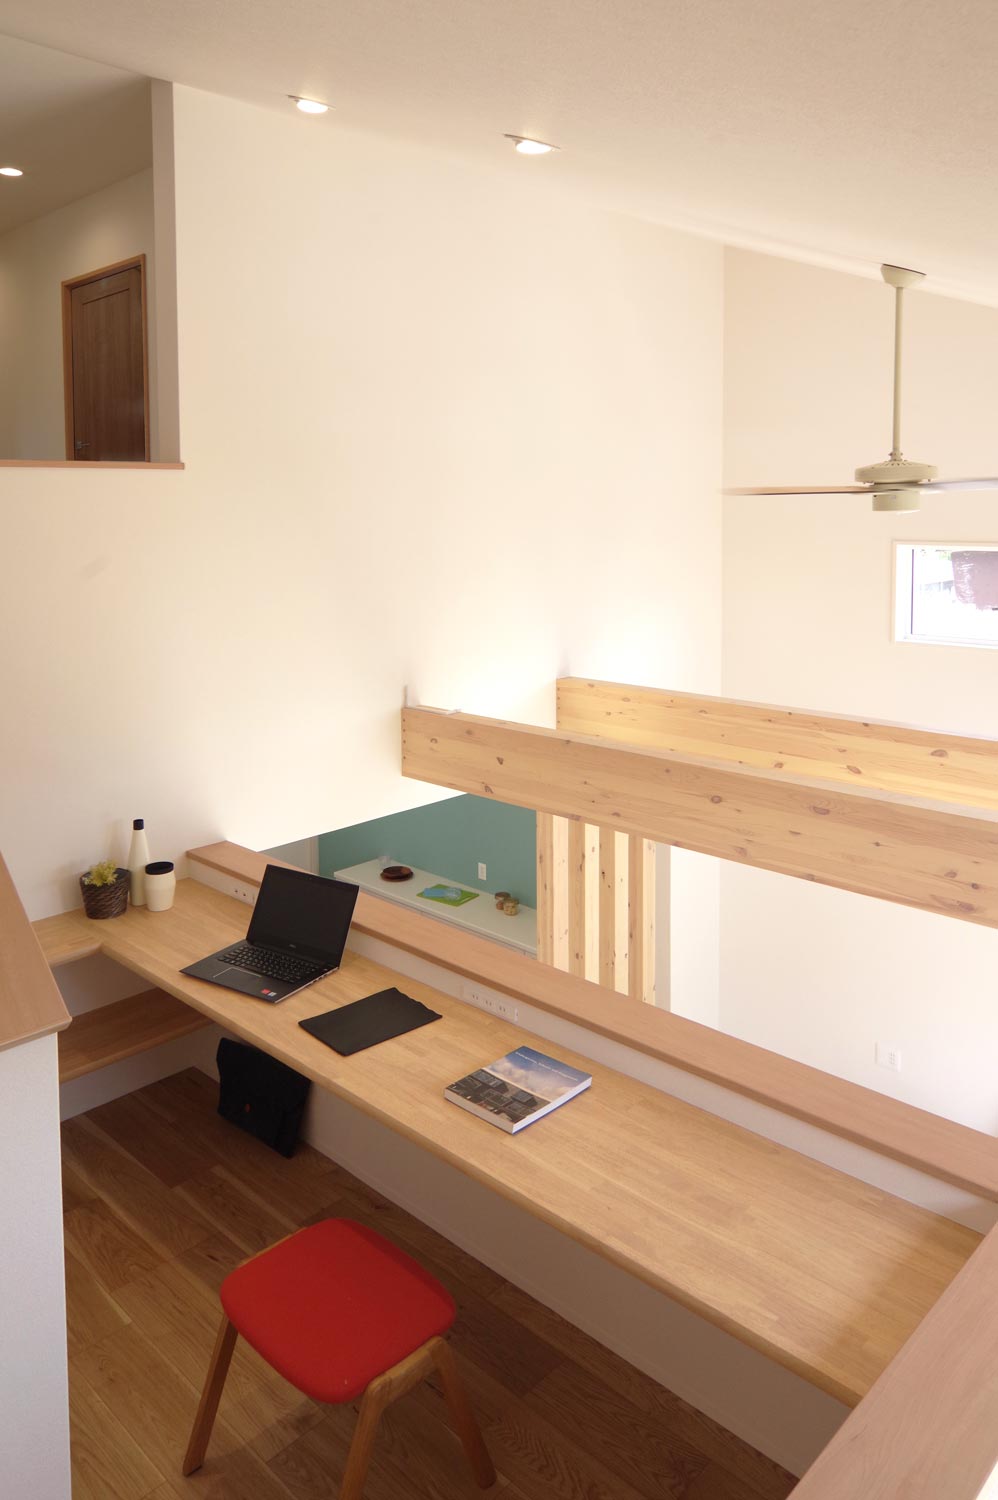 佐渡市 新築住宅 完成見学会 ピアノとスキップフロアと。 スキップフロア スタディーコーナー